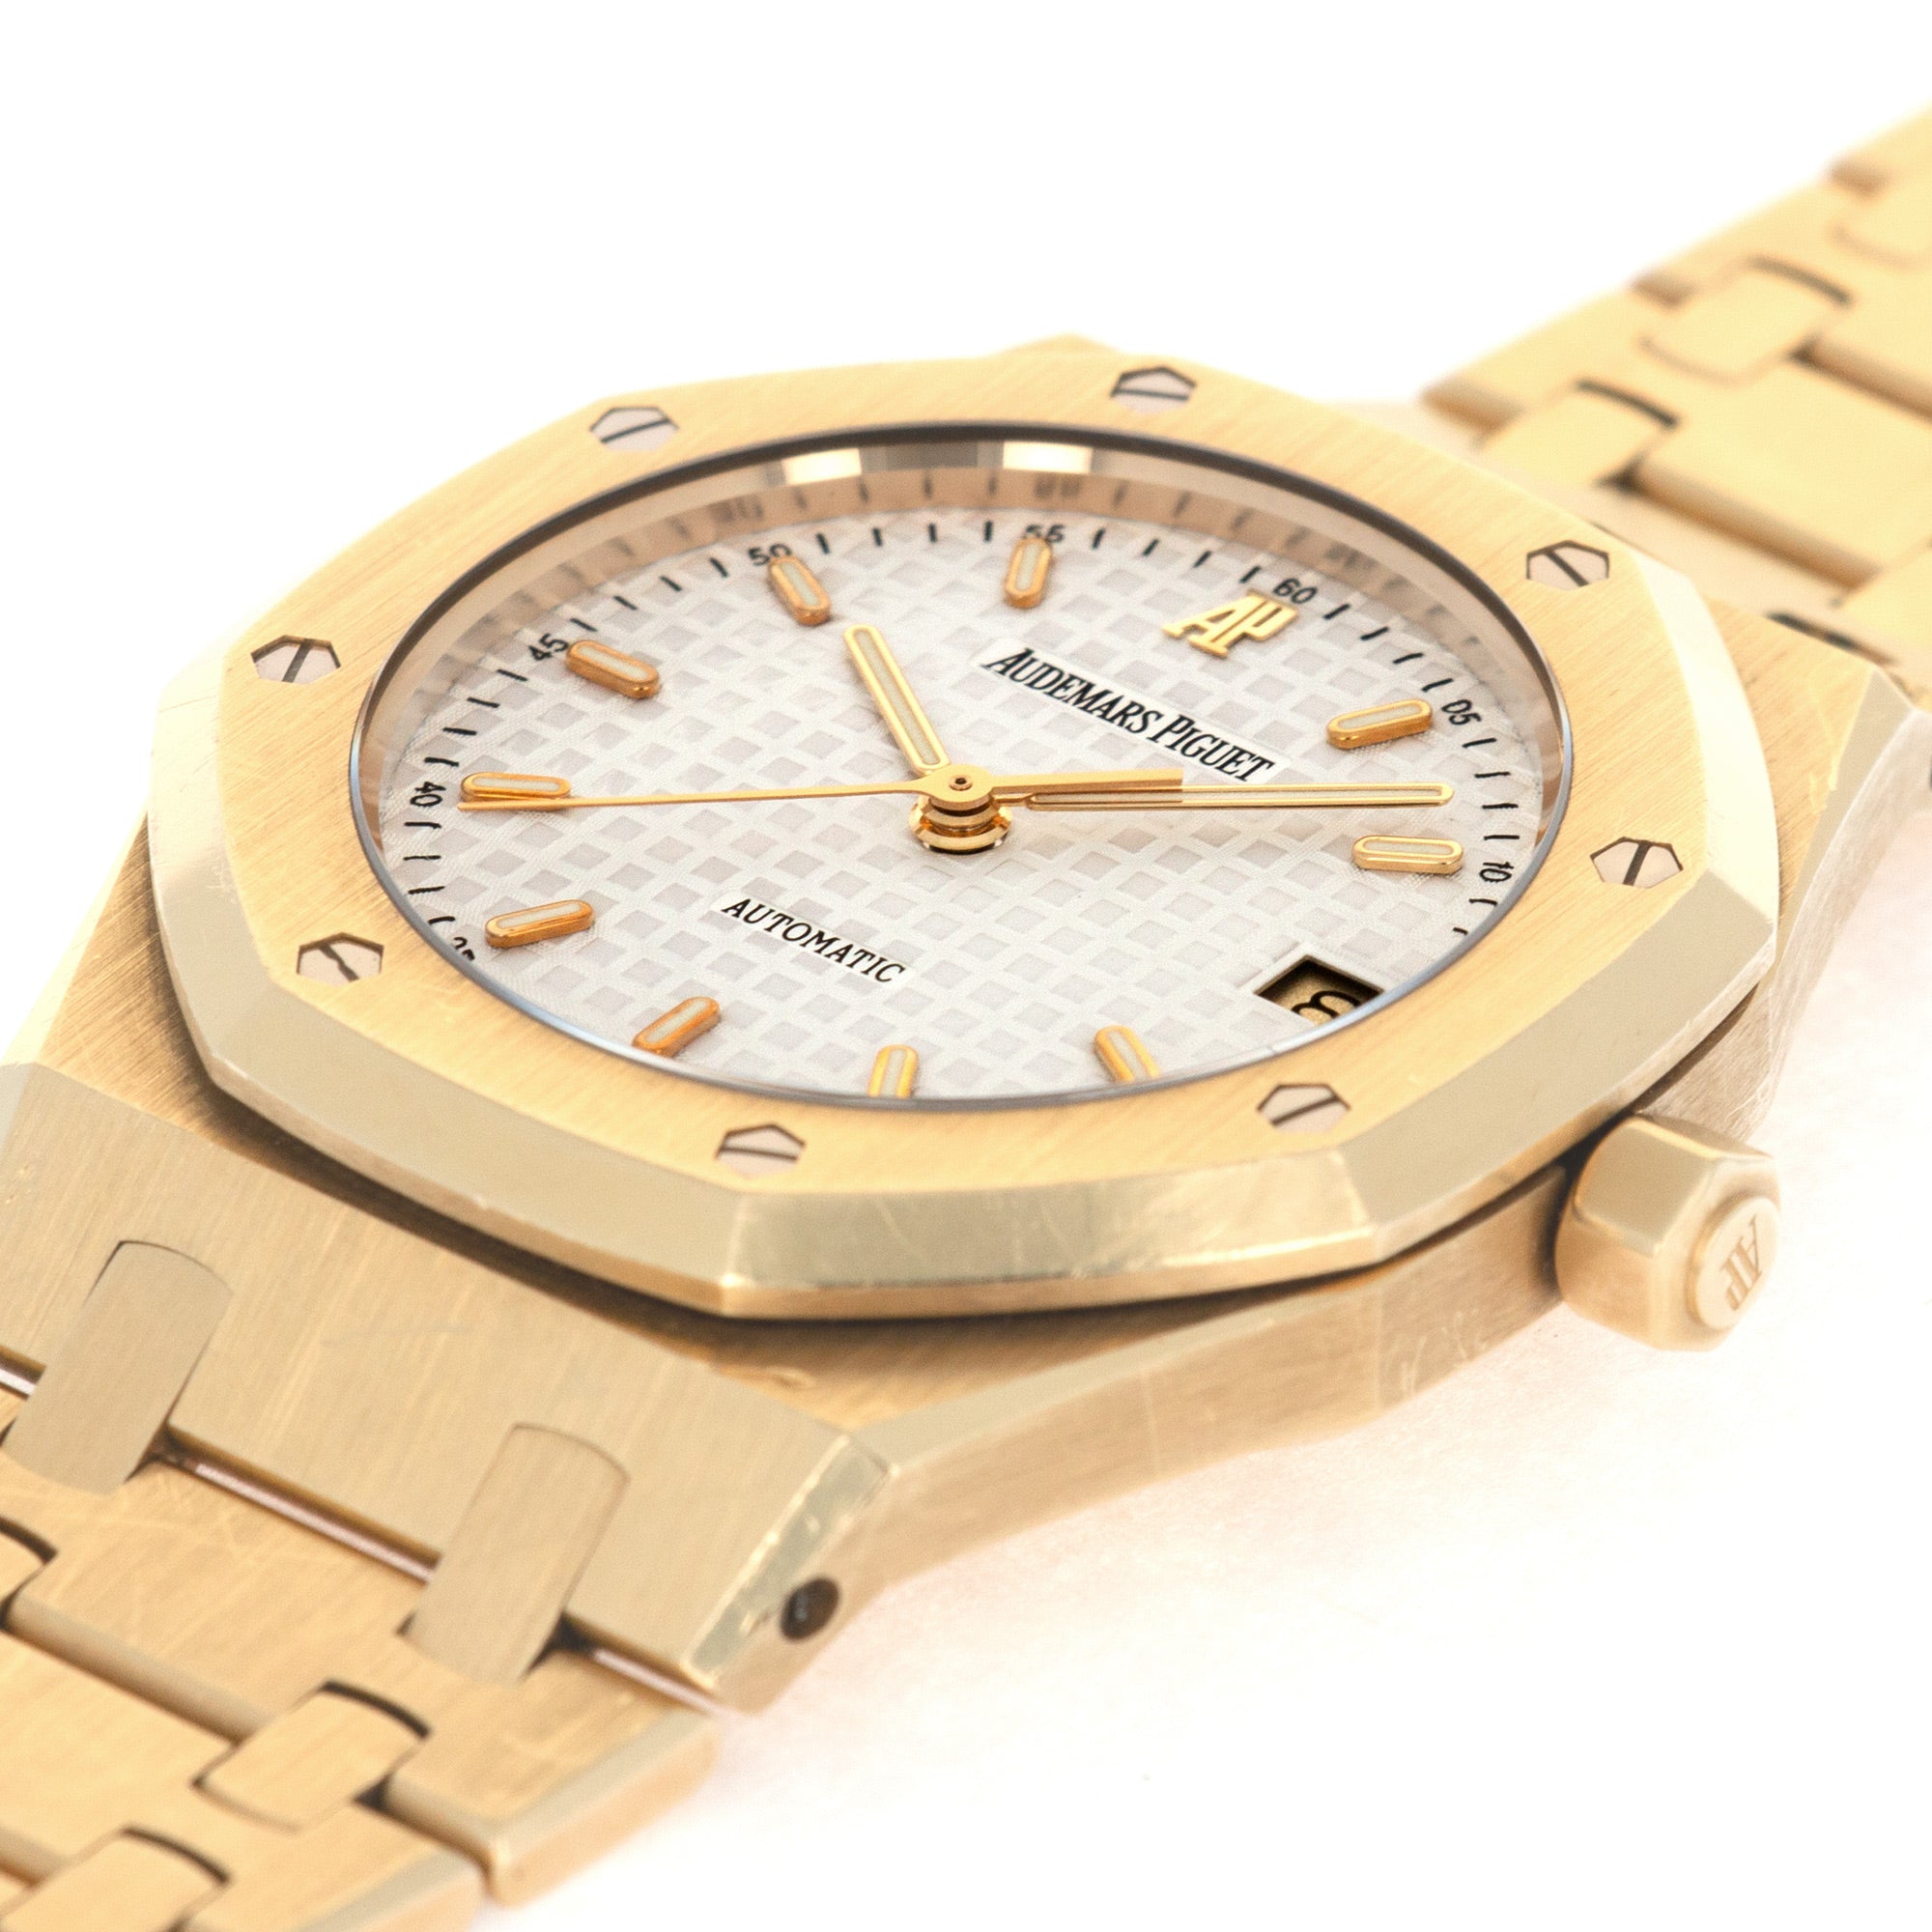 Audemars Piguet - Audemars Piguet Yellow Gold Royal Oak Automatic Watch Ref. 14790 - The Keystone Watches